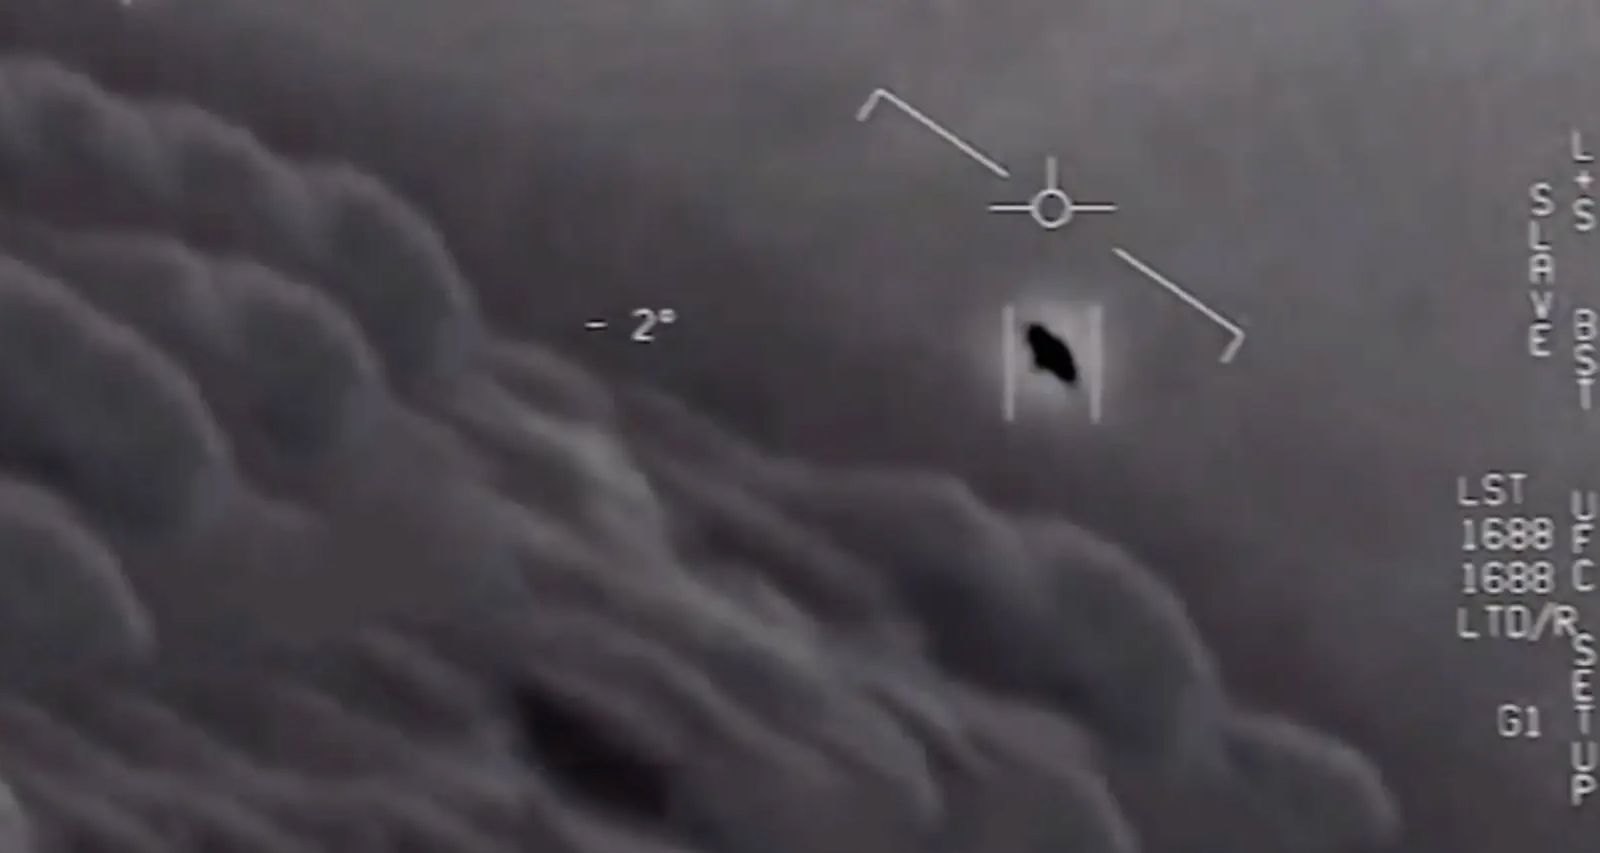 НЛО над головой: история о том, как США были вынуждены обнародовать видео встречи со странными объектами